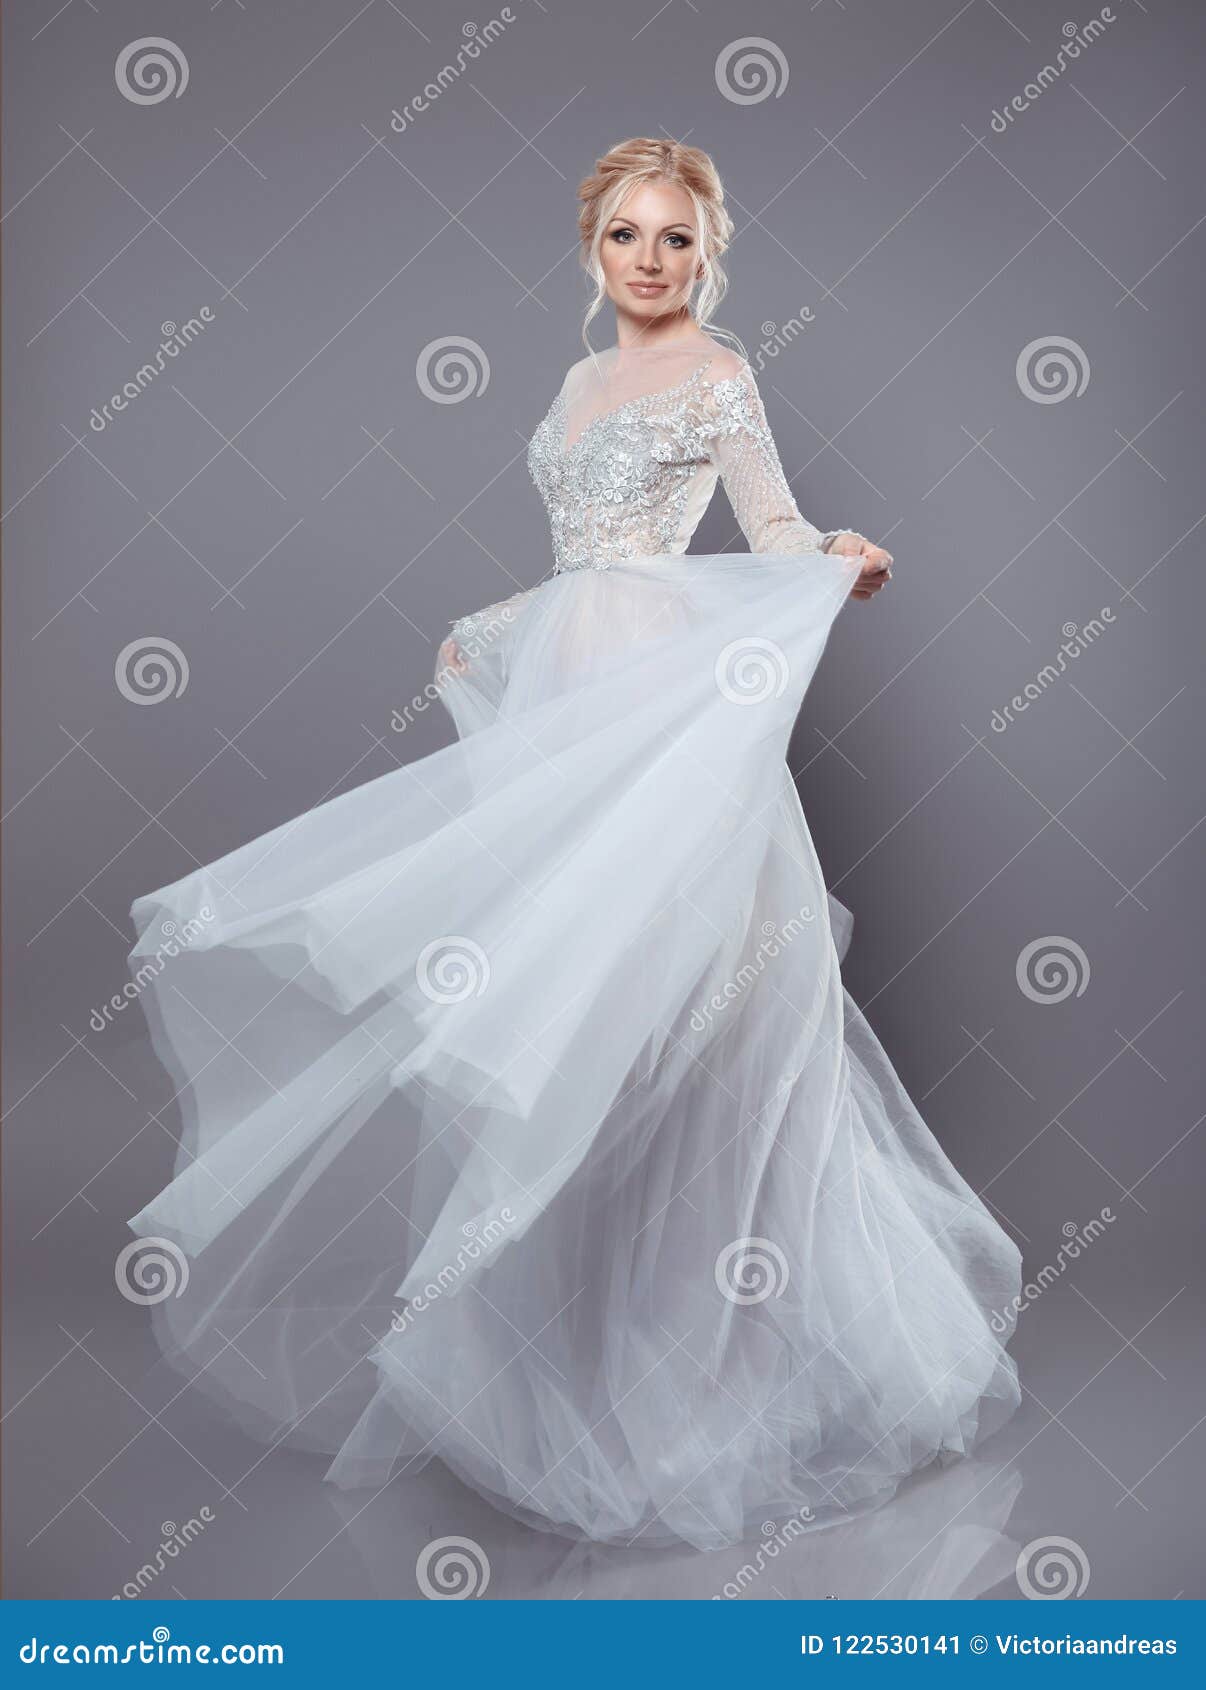 Woman Long White Dress Image & Photo (Free Trial) | Bigstock